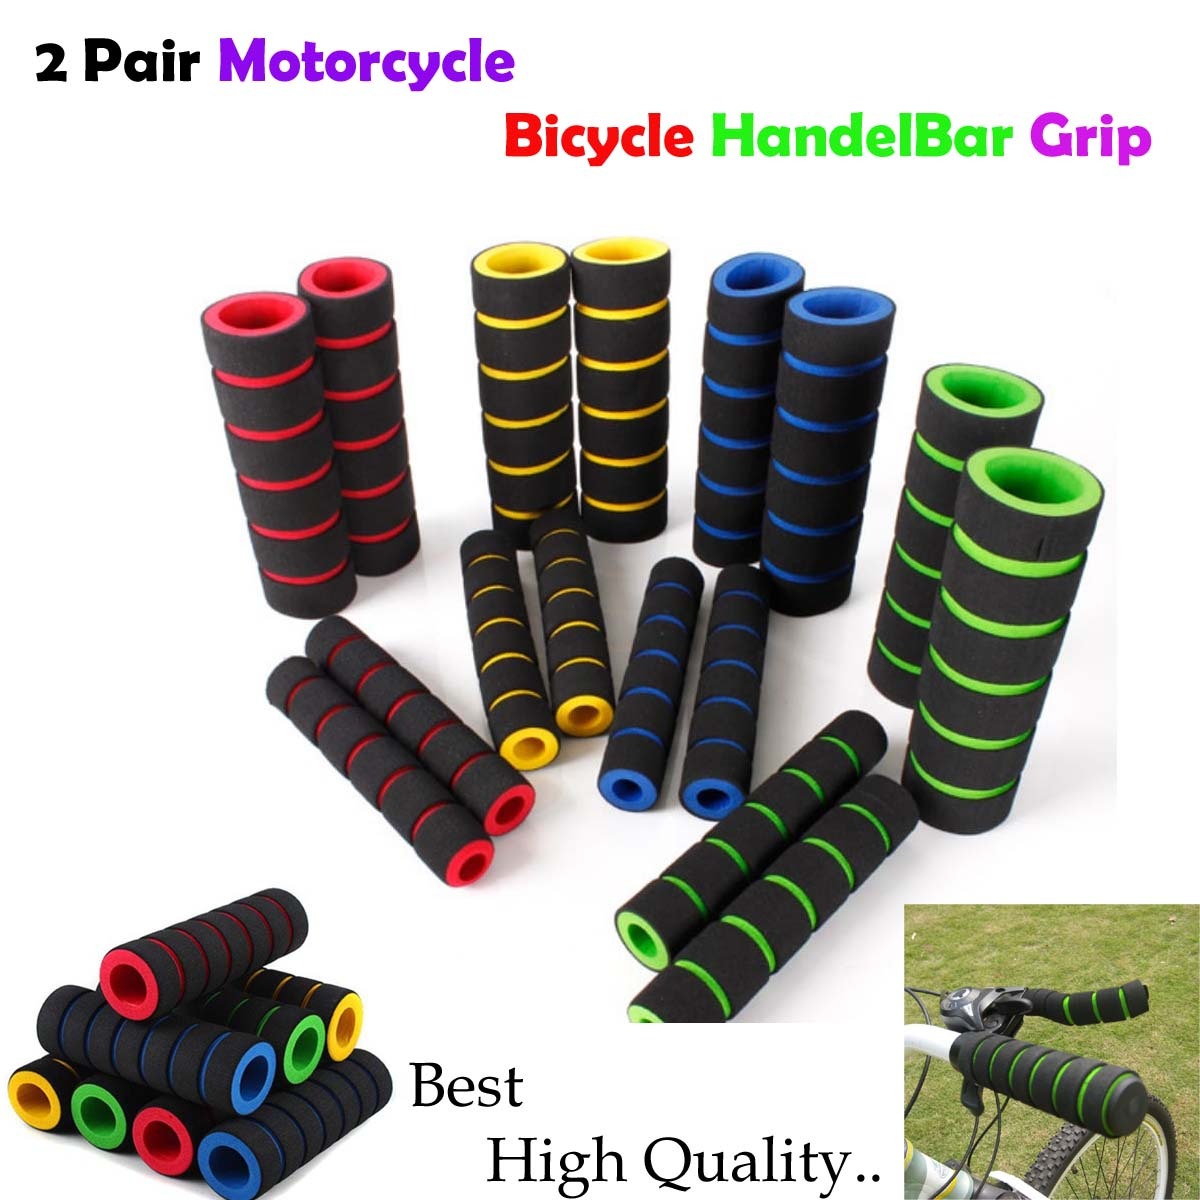 2 Pair Motorcycle Bicycle Handel Bar Grip + Break Clutch Lever Very Soft Sponge Cover Grips